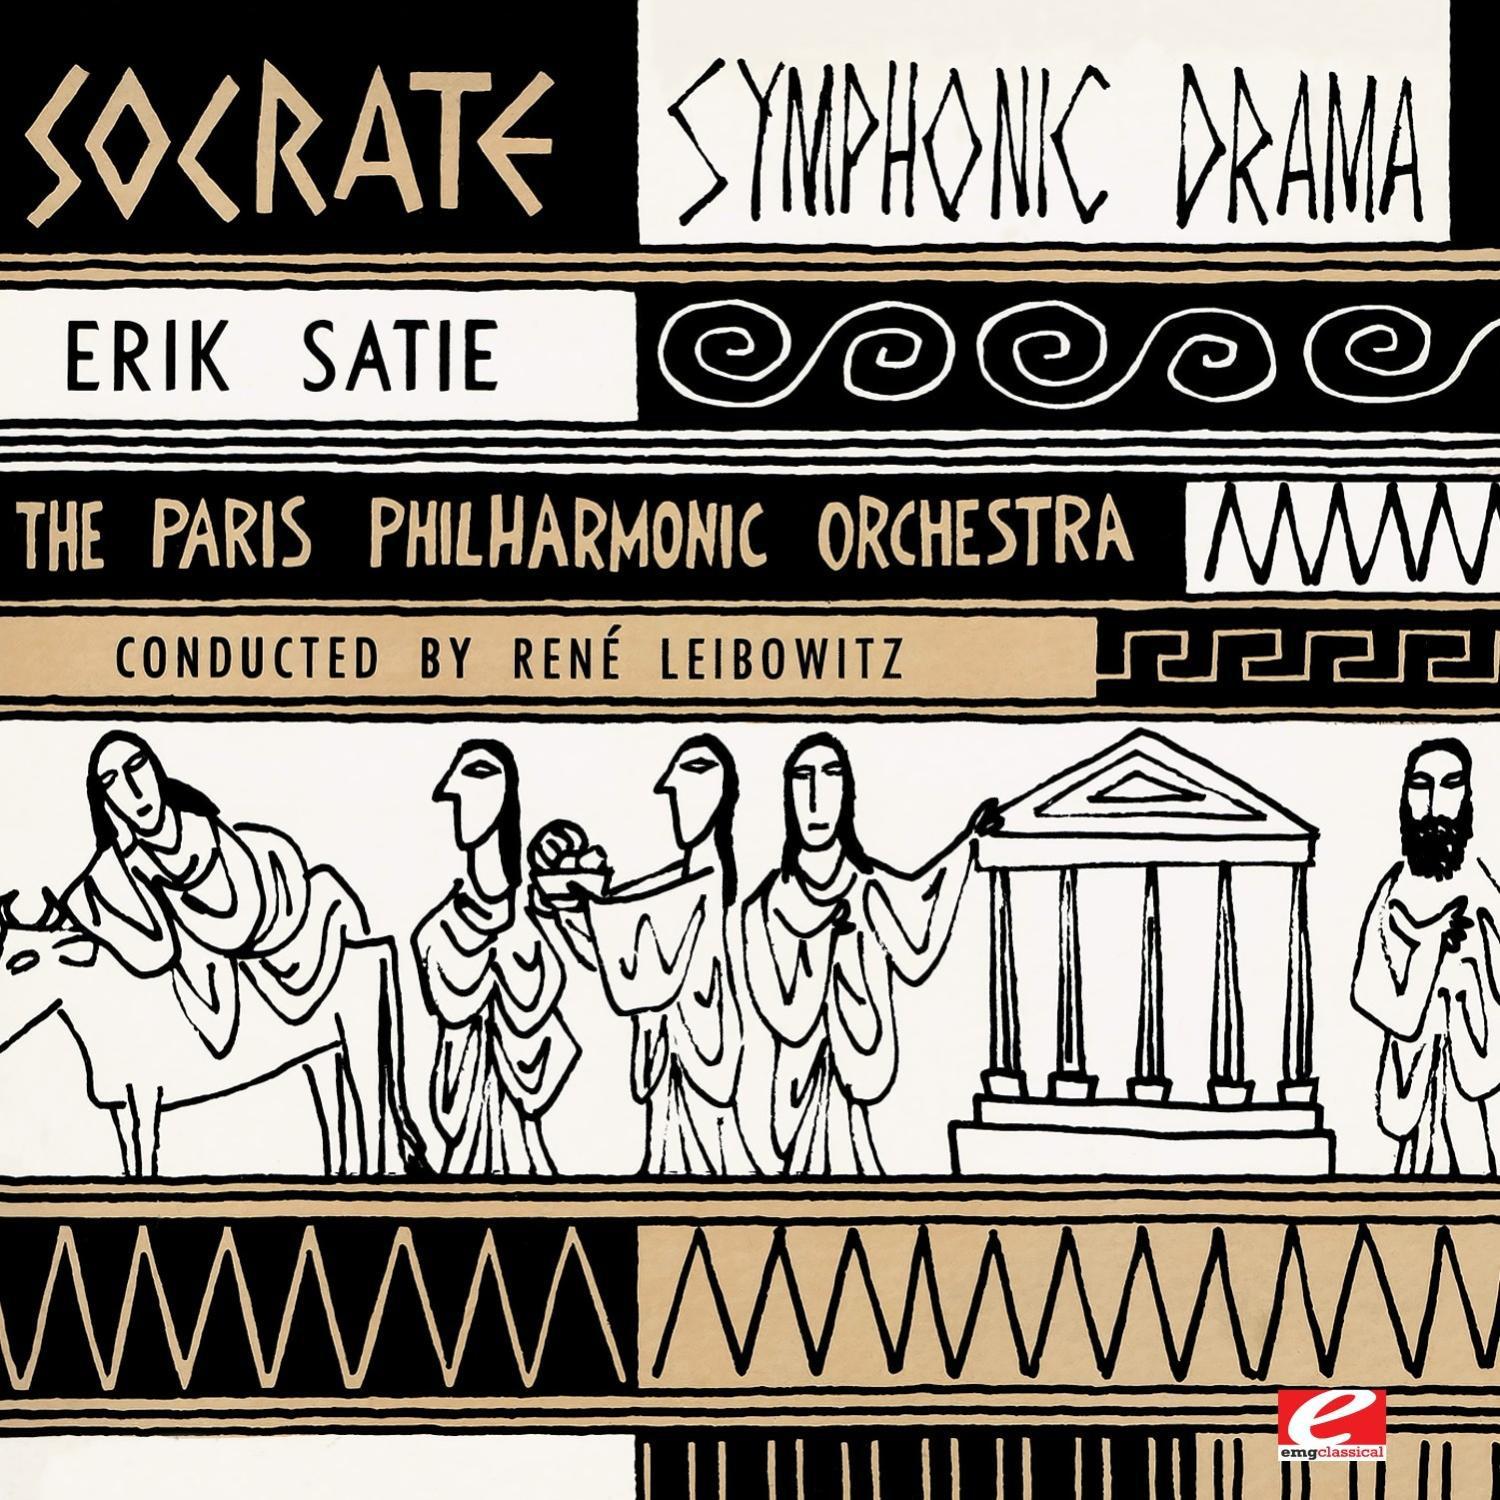 Erik Satie - Socrate: Les bords de l'Ilissus (The Banks of the Ilissus) text taken from Plato's Phaedrus